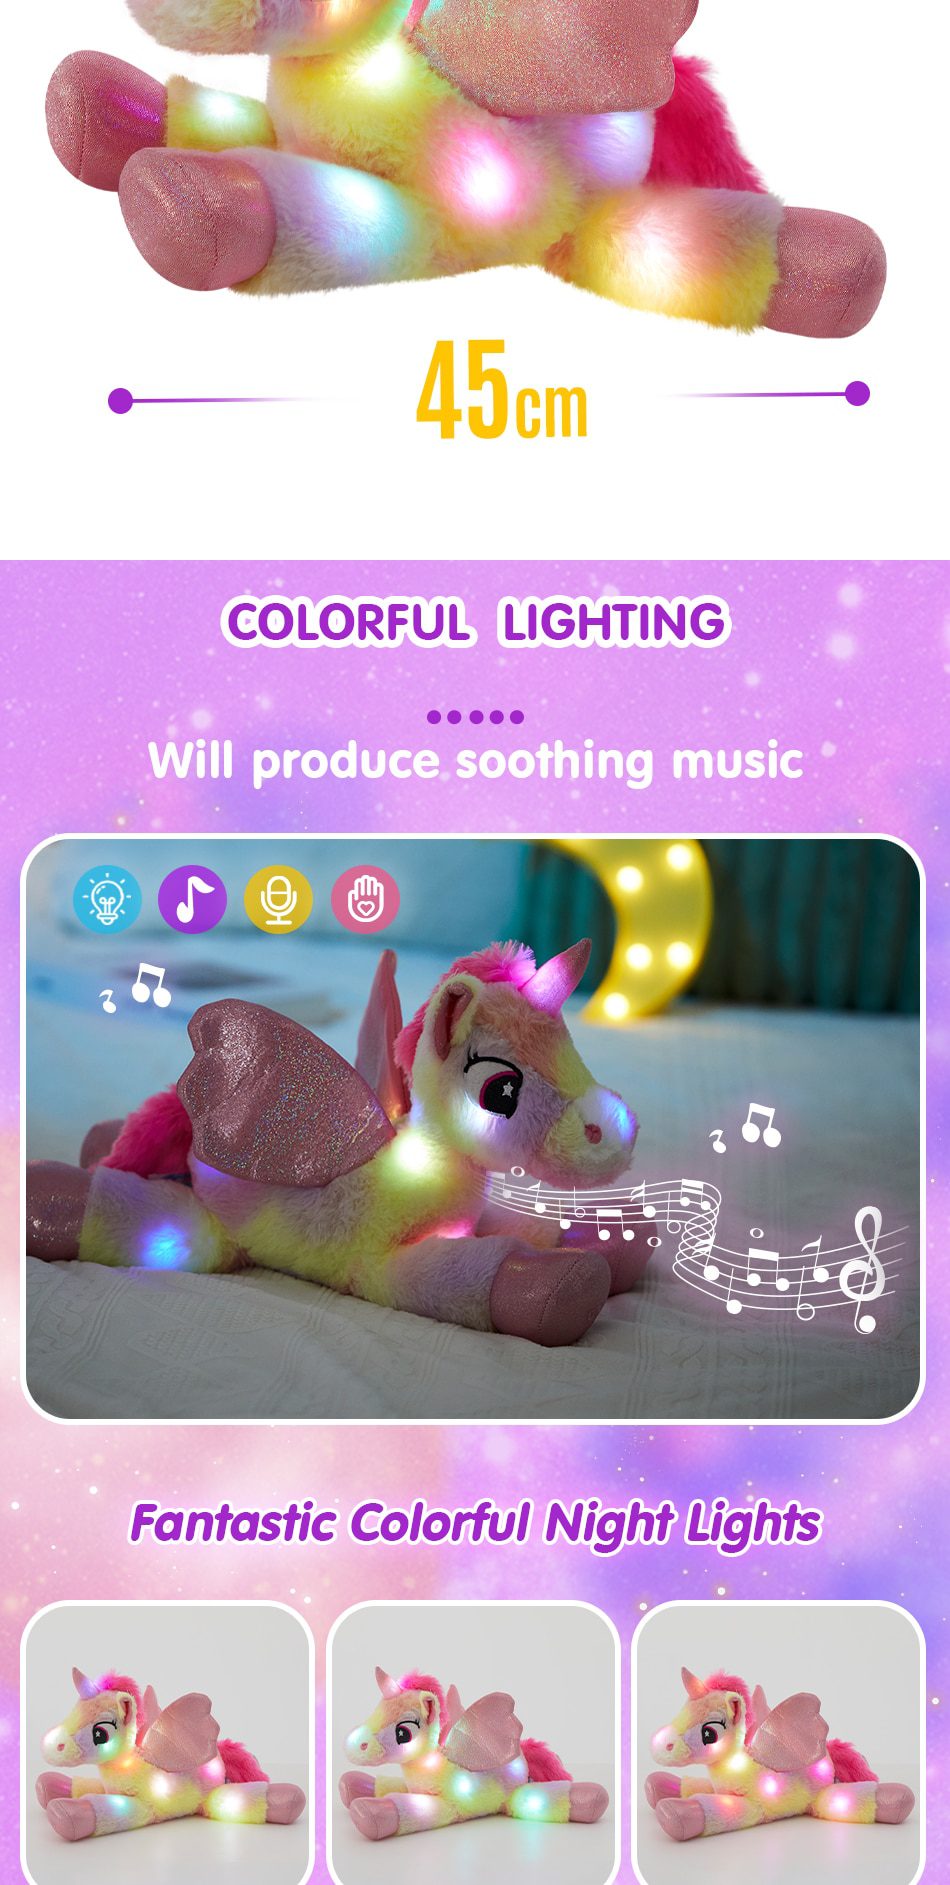 Regenbogen Einhorn Plüschtiere | 48cm LED Plüschtiere Musikalische Kissen - Geburtstagsgeschenk für Kinder Mädchen -3